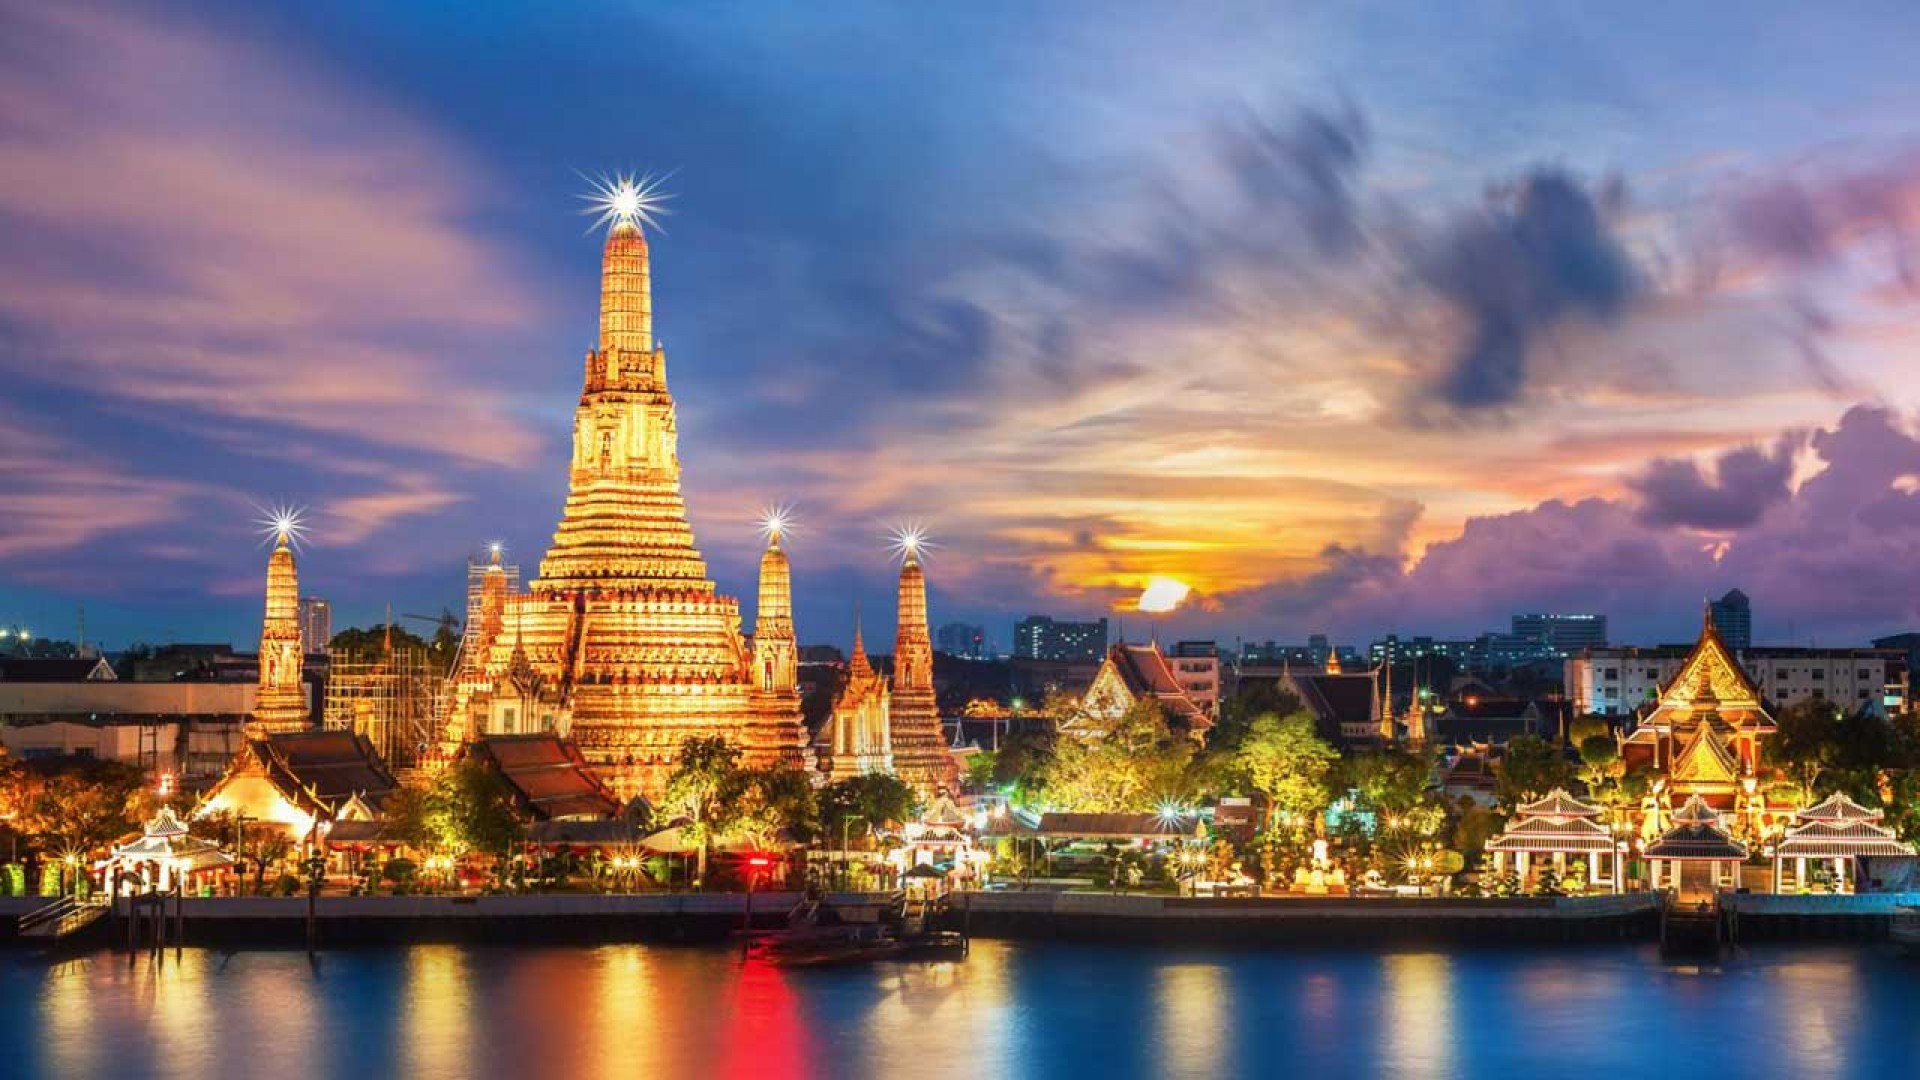 Di chuyển thế nào với tiếng Anh khi đi du lịch Thái Lan?